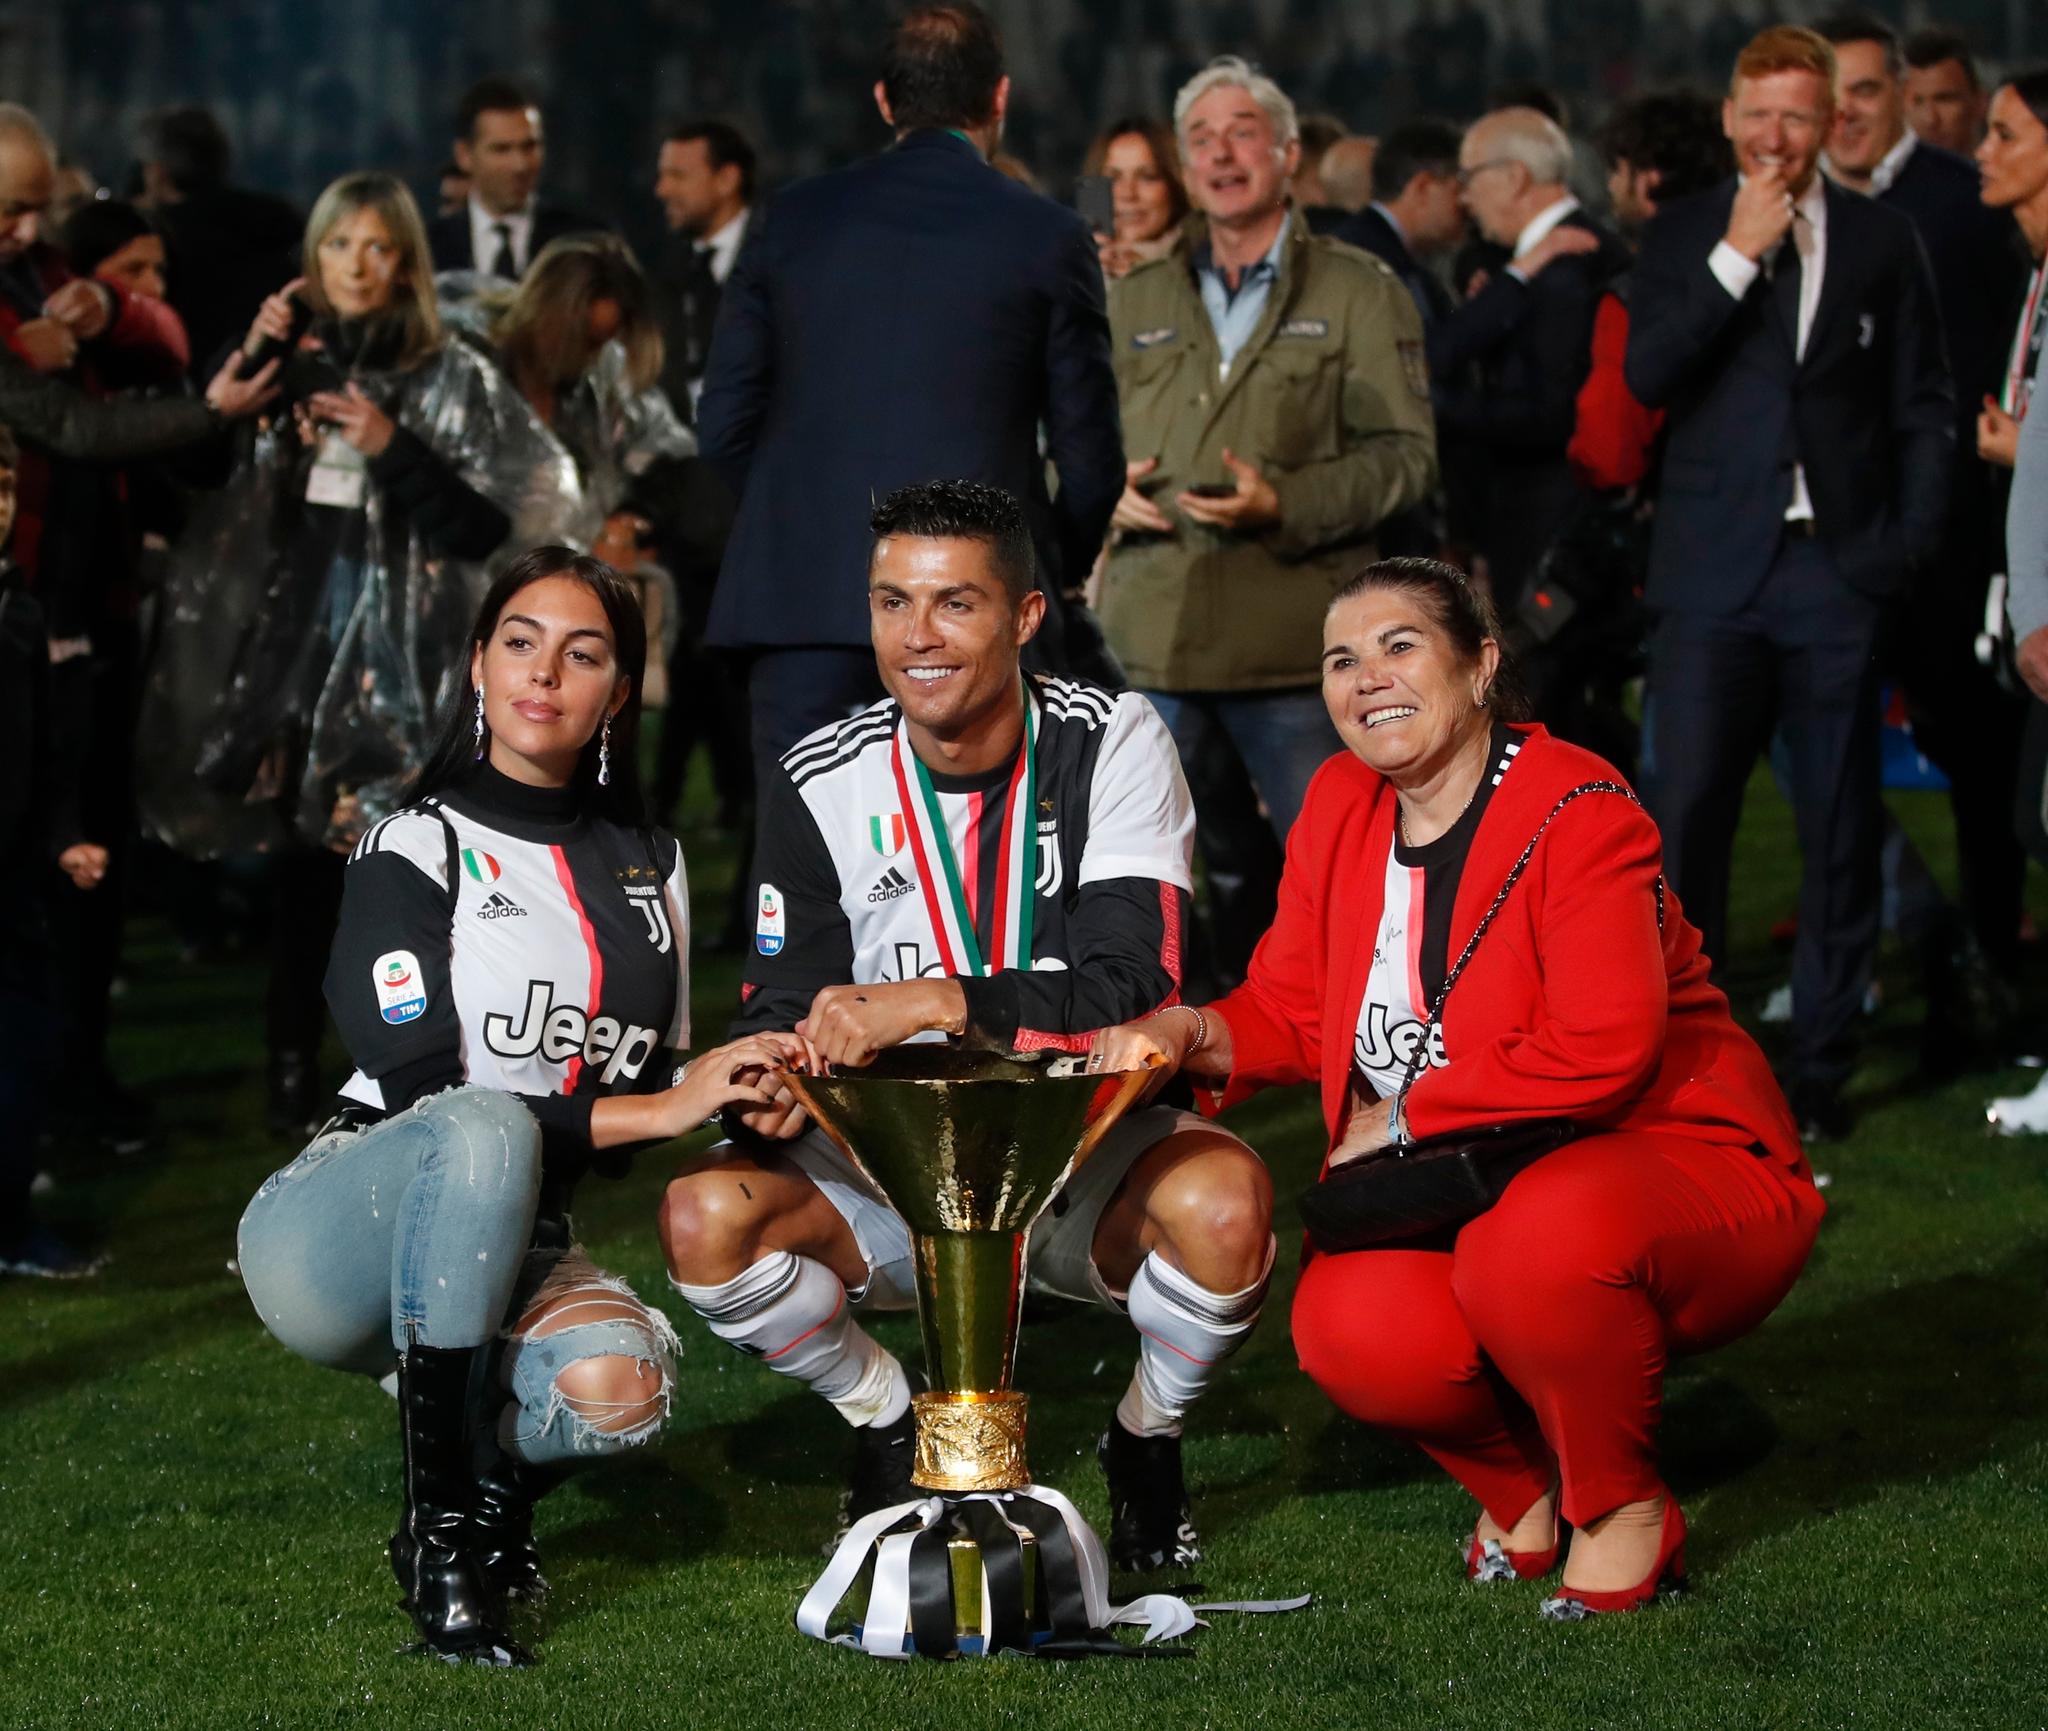 FAMILIE: Georgina Rodriguez flankert av kjæreste Cristiano Ronaldo og mor Dolores Aveiro.